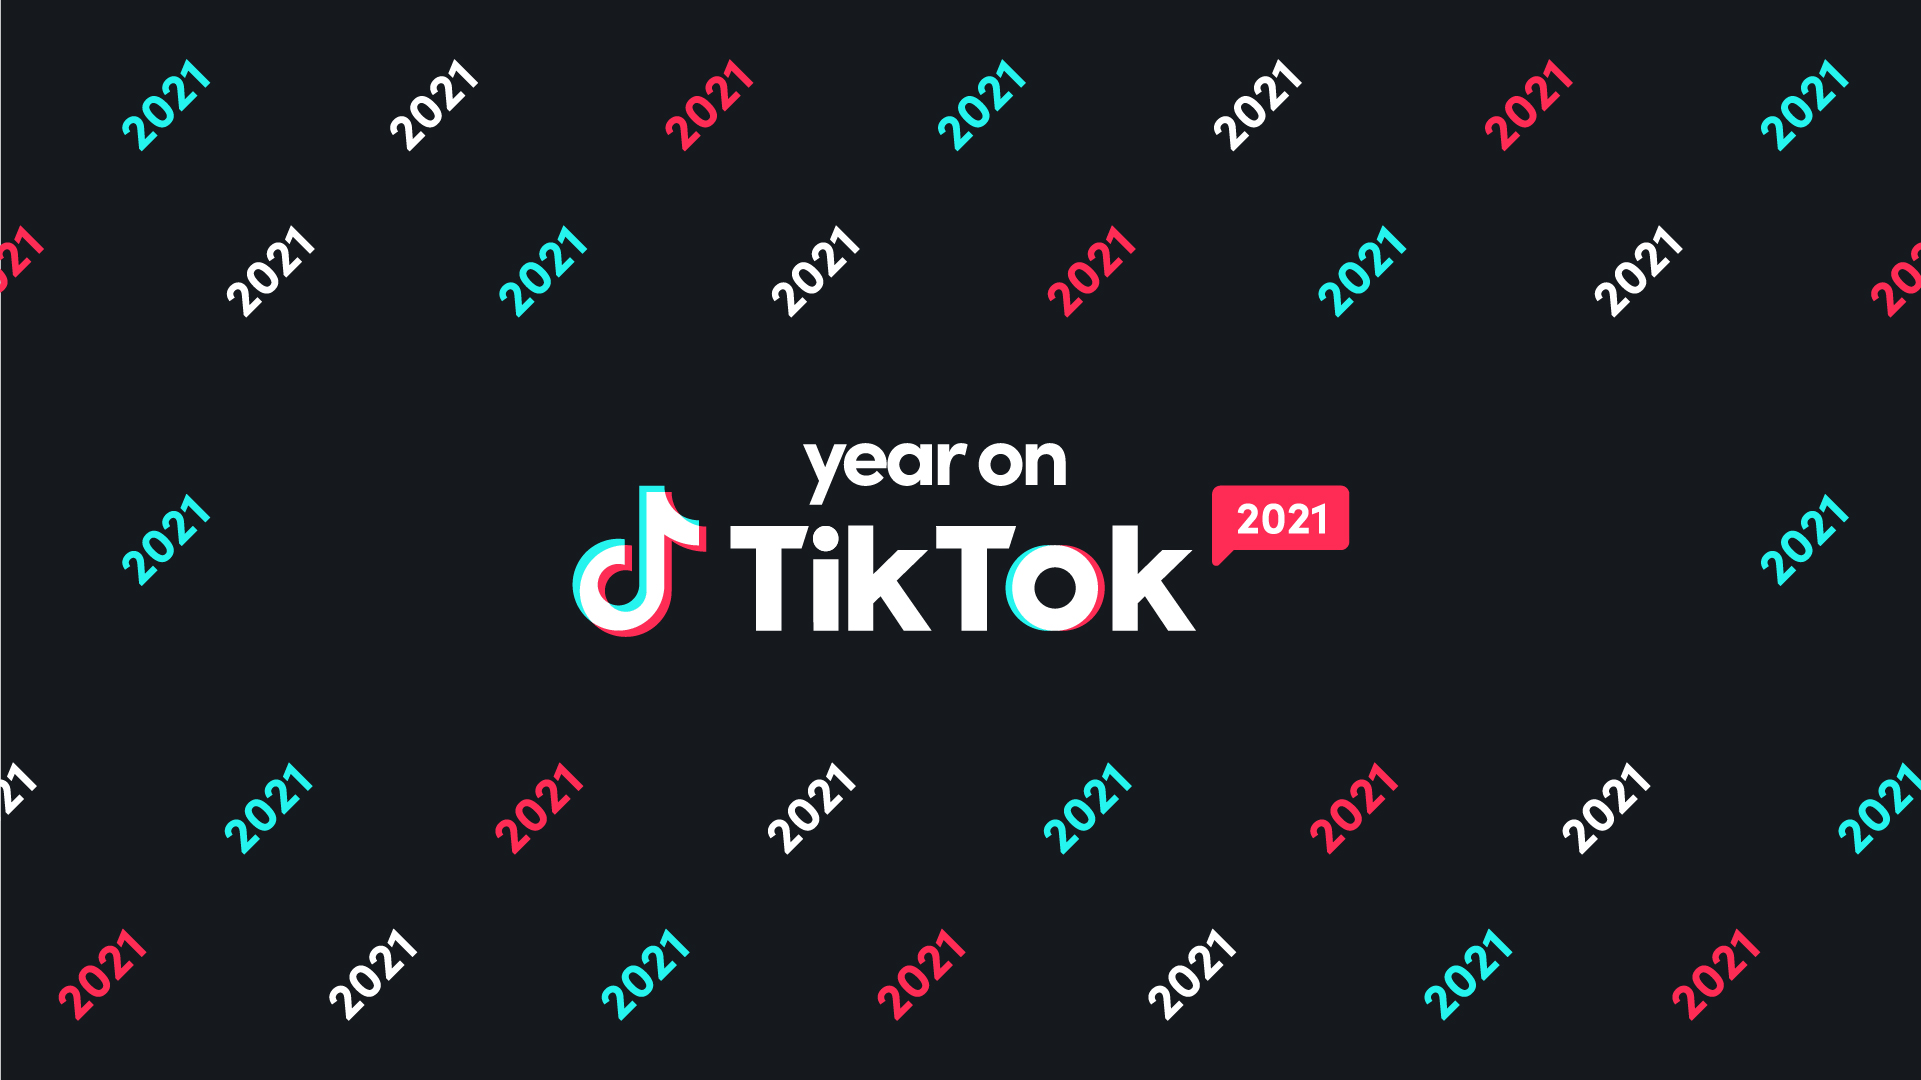 Tiktok là mạng xã hội đang rất thịnh hành hiện nay và hình ảnh liên quan đến Tiktok sẽ cho bạn cơ hội khám phá các nội dung hấp dẫn trên nền tảng này.